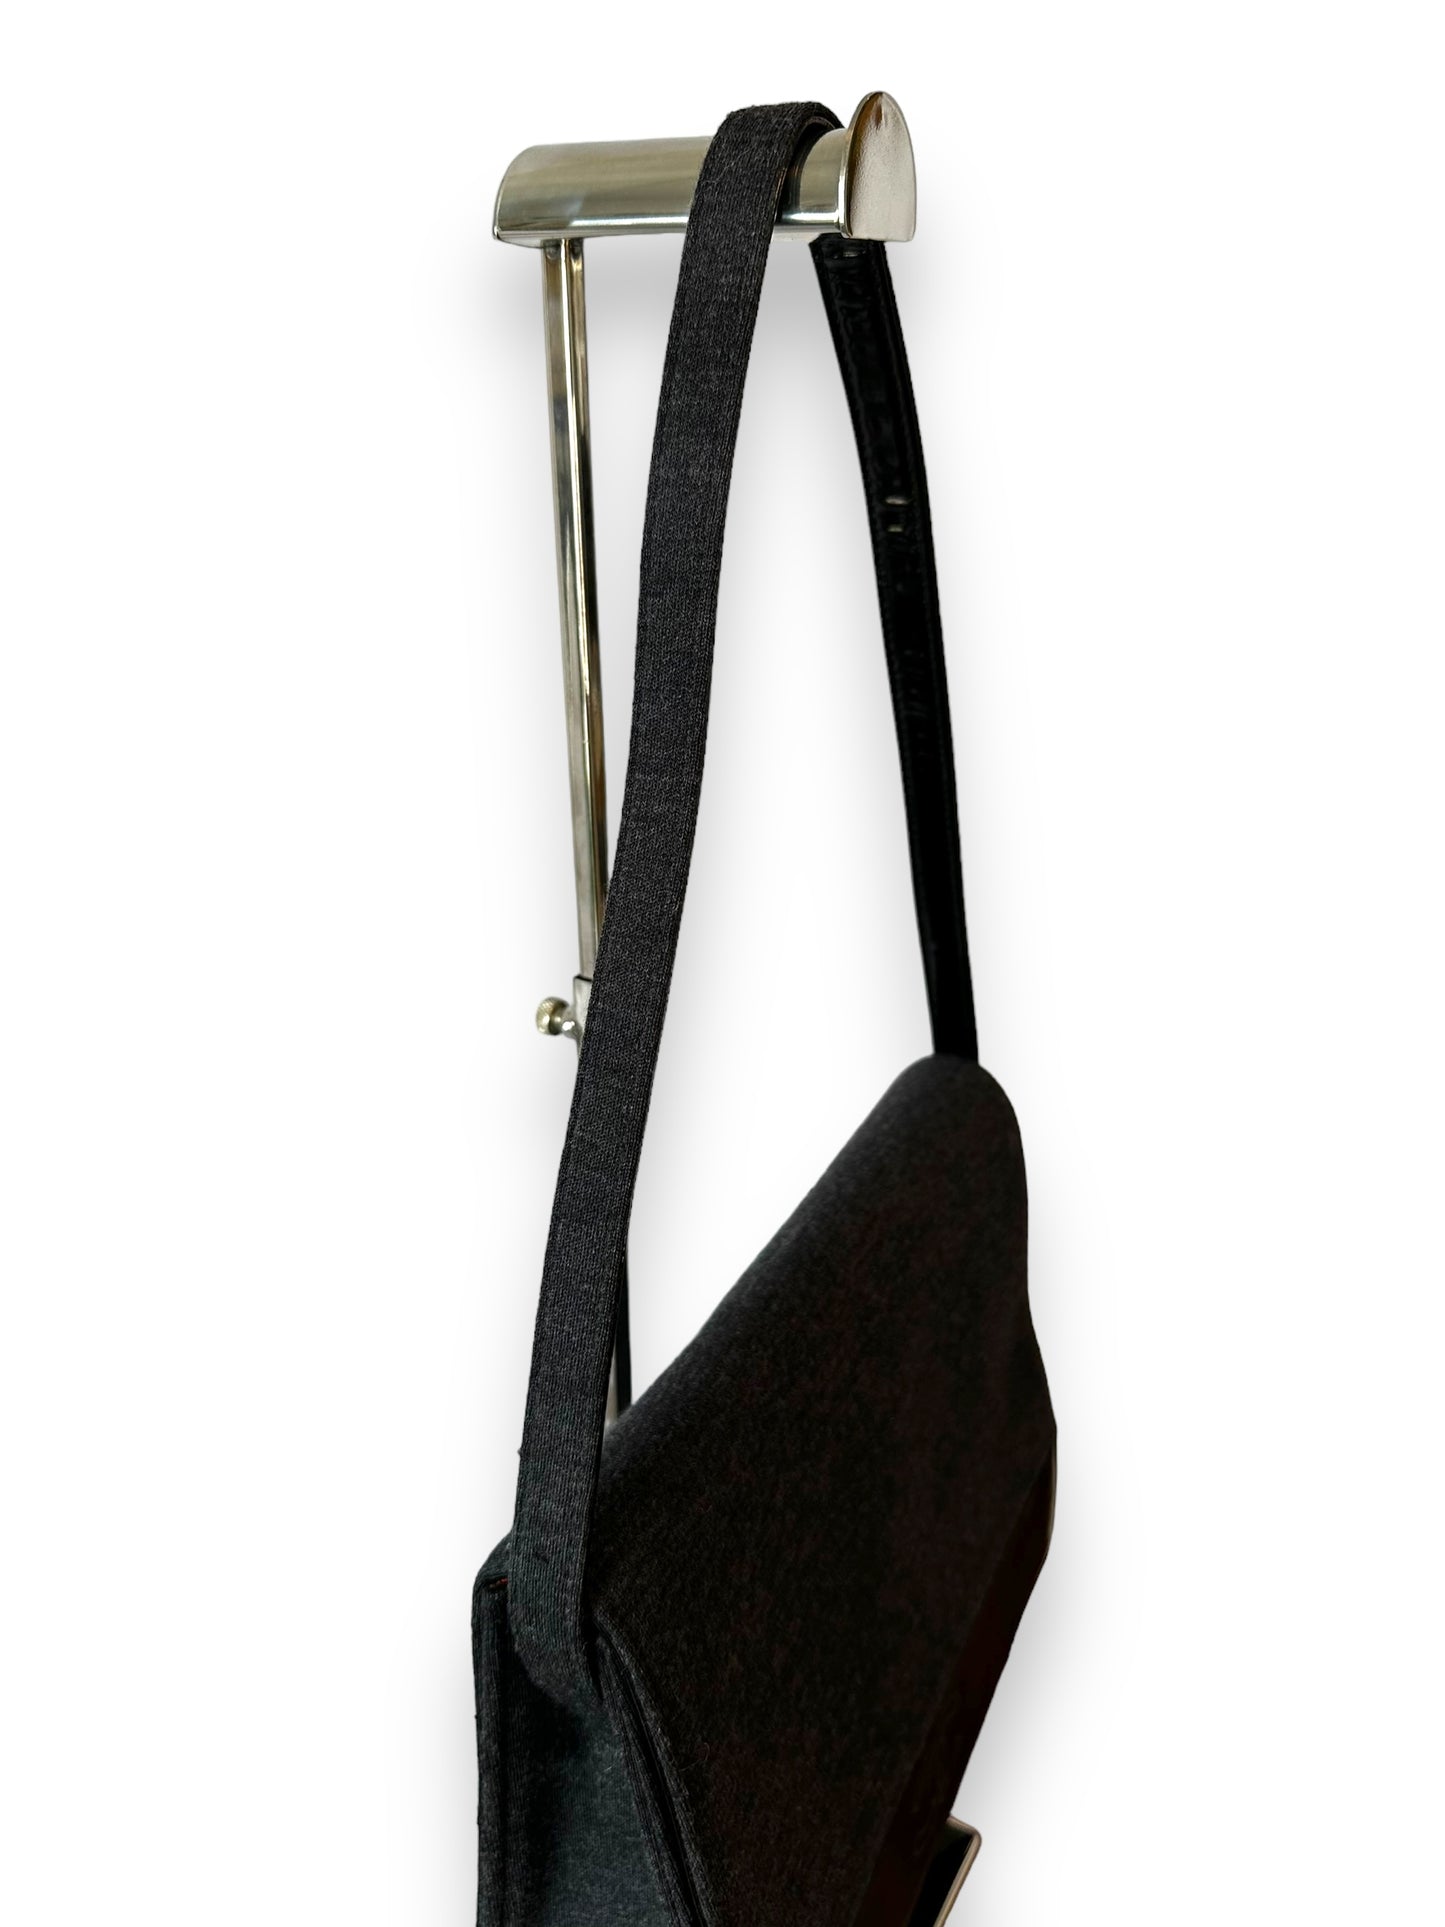 Chanel Vintage Jersey & Patent Leather Shoulder Bag